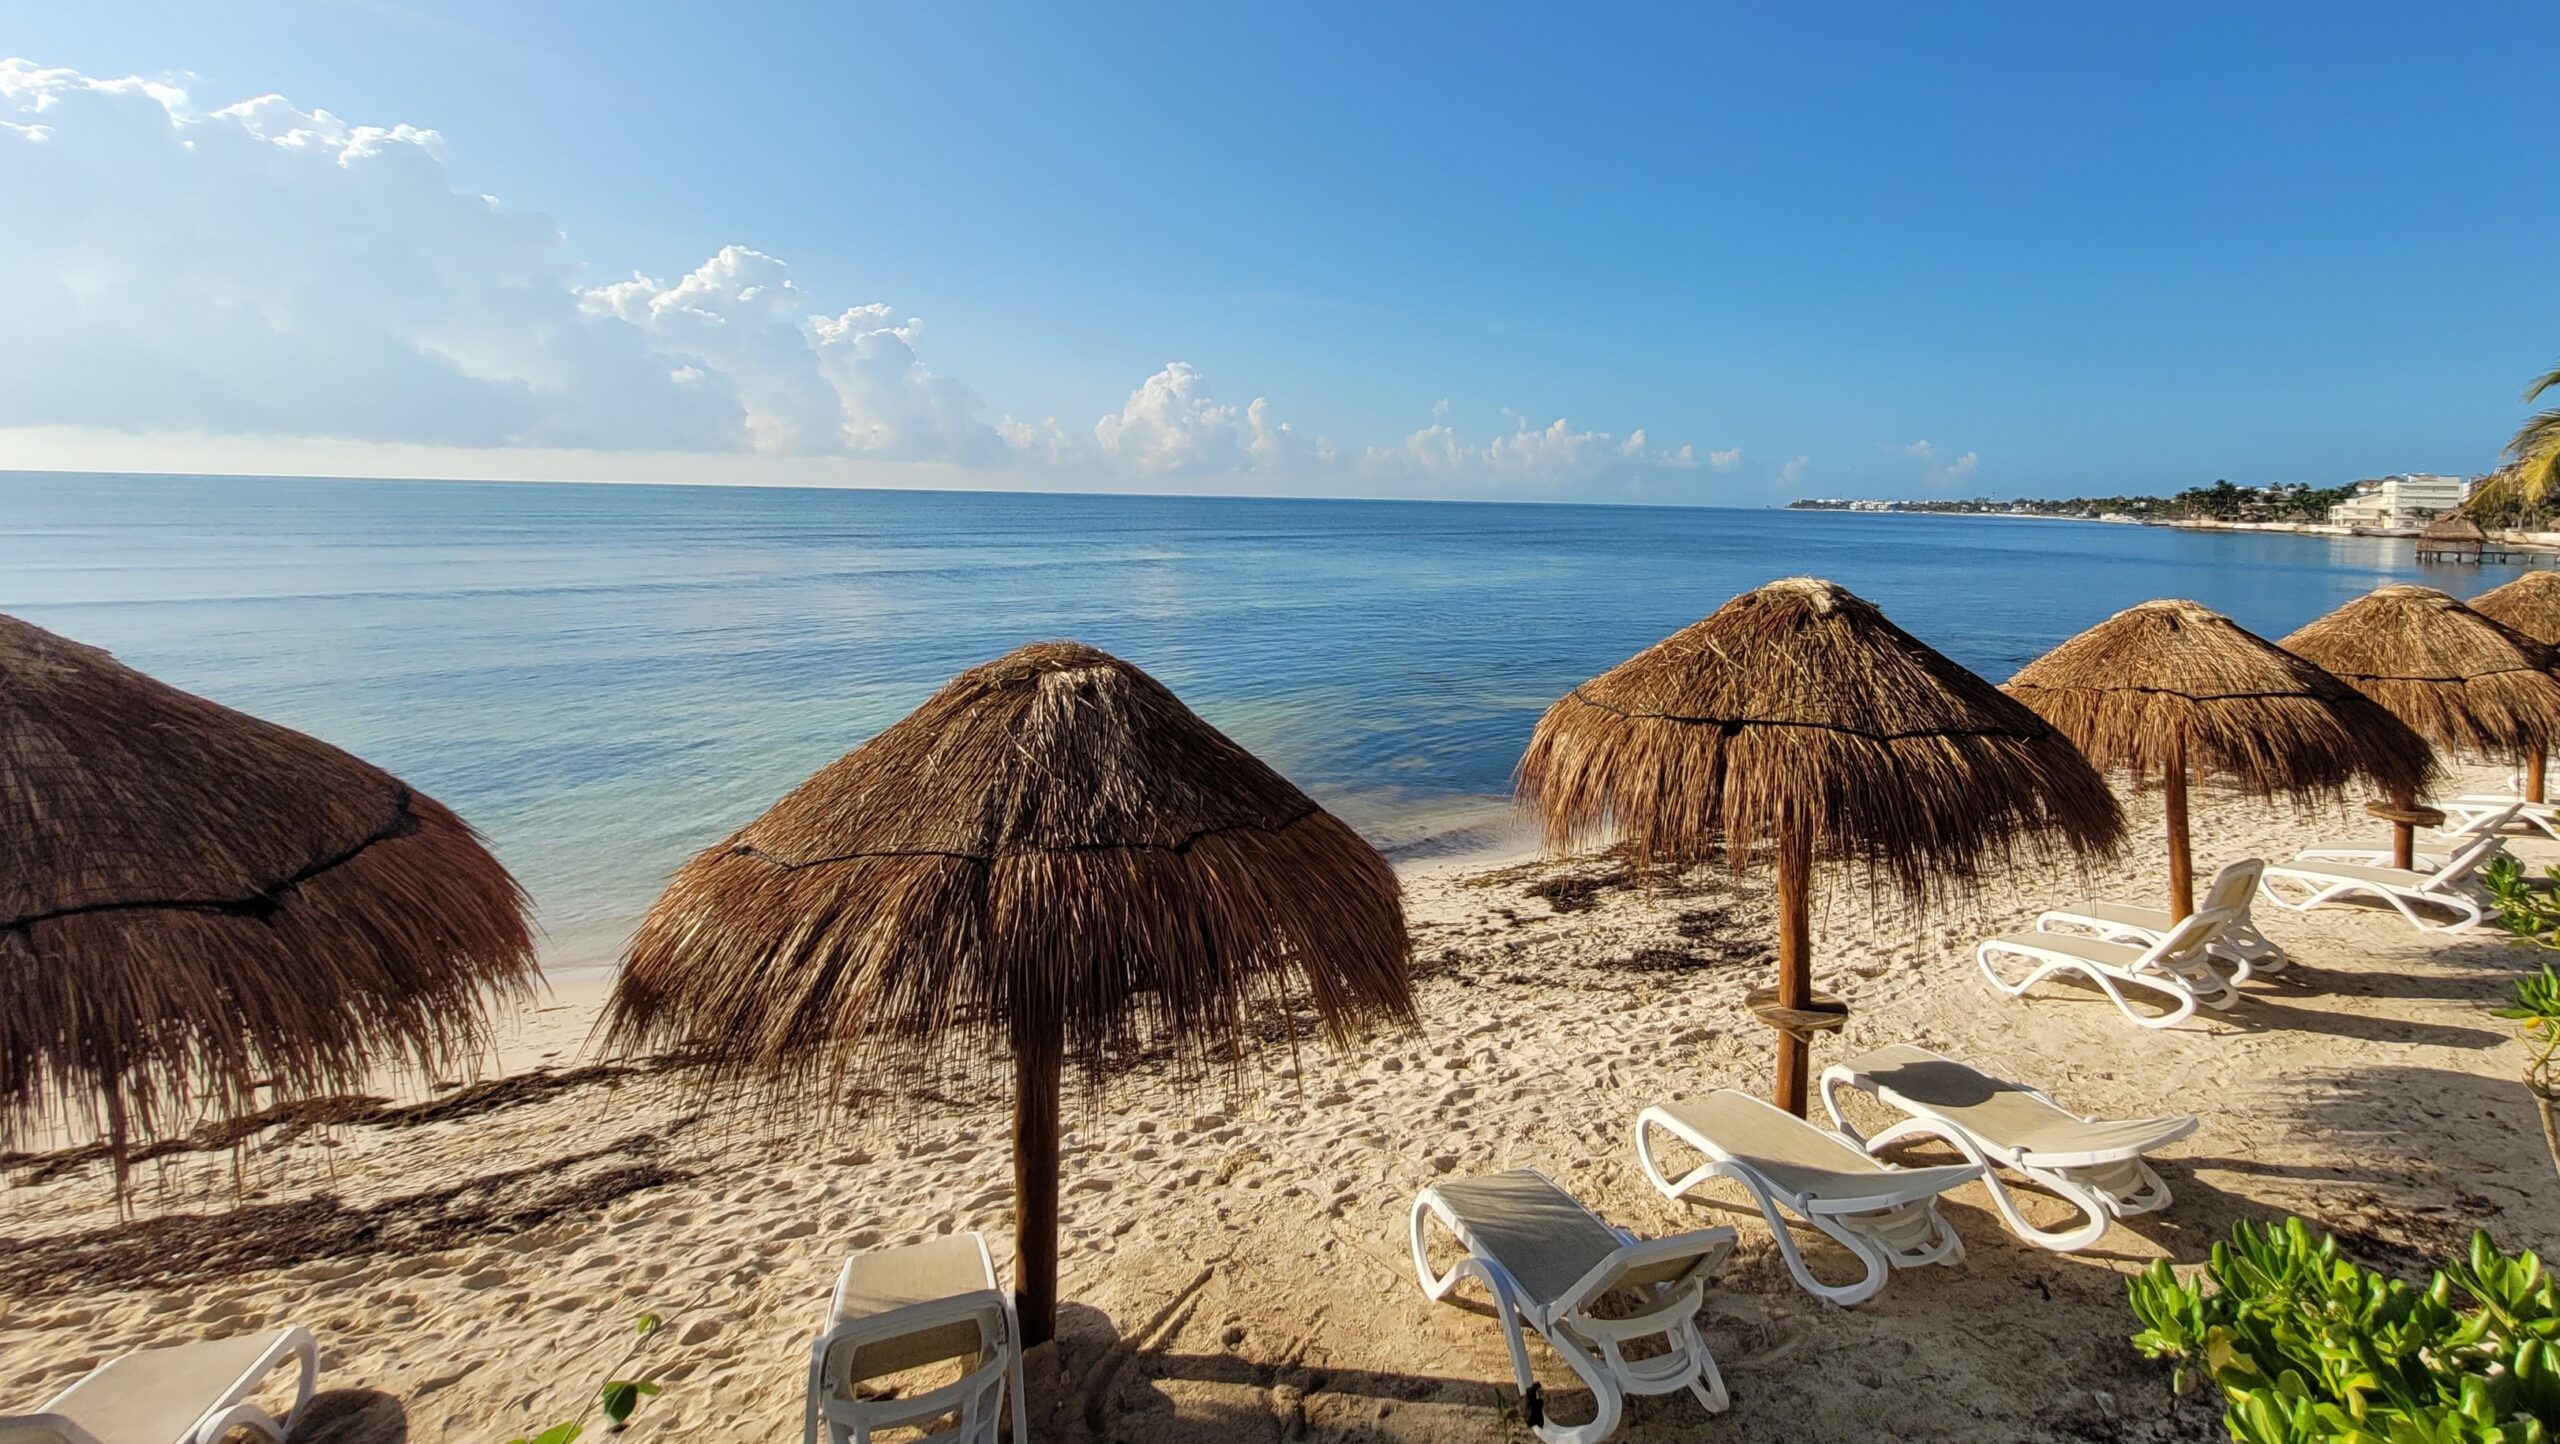 Hyatt Ziva Riviera Cancun Vacation Review